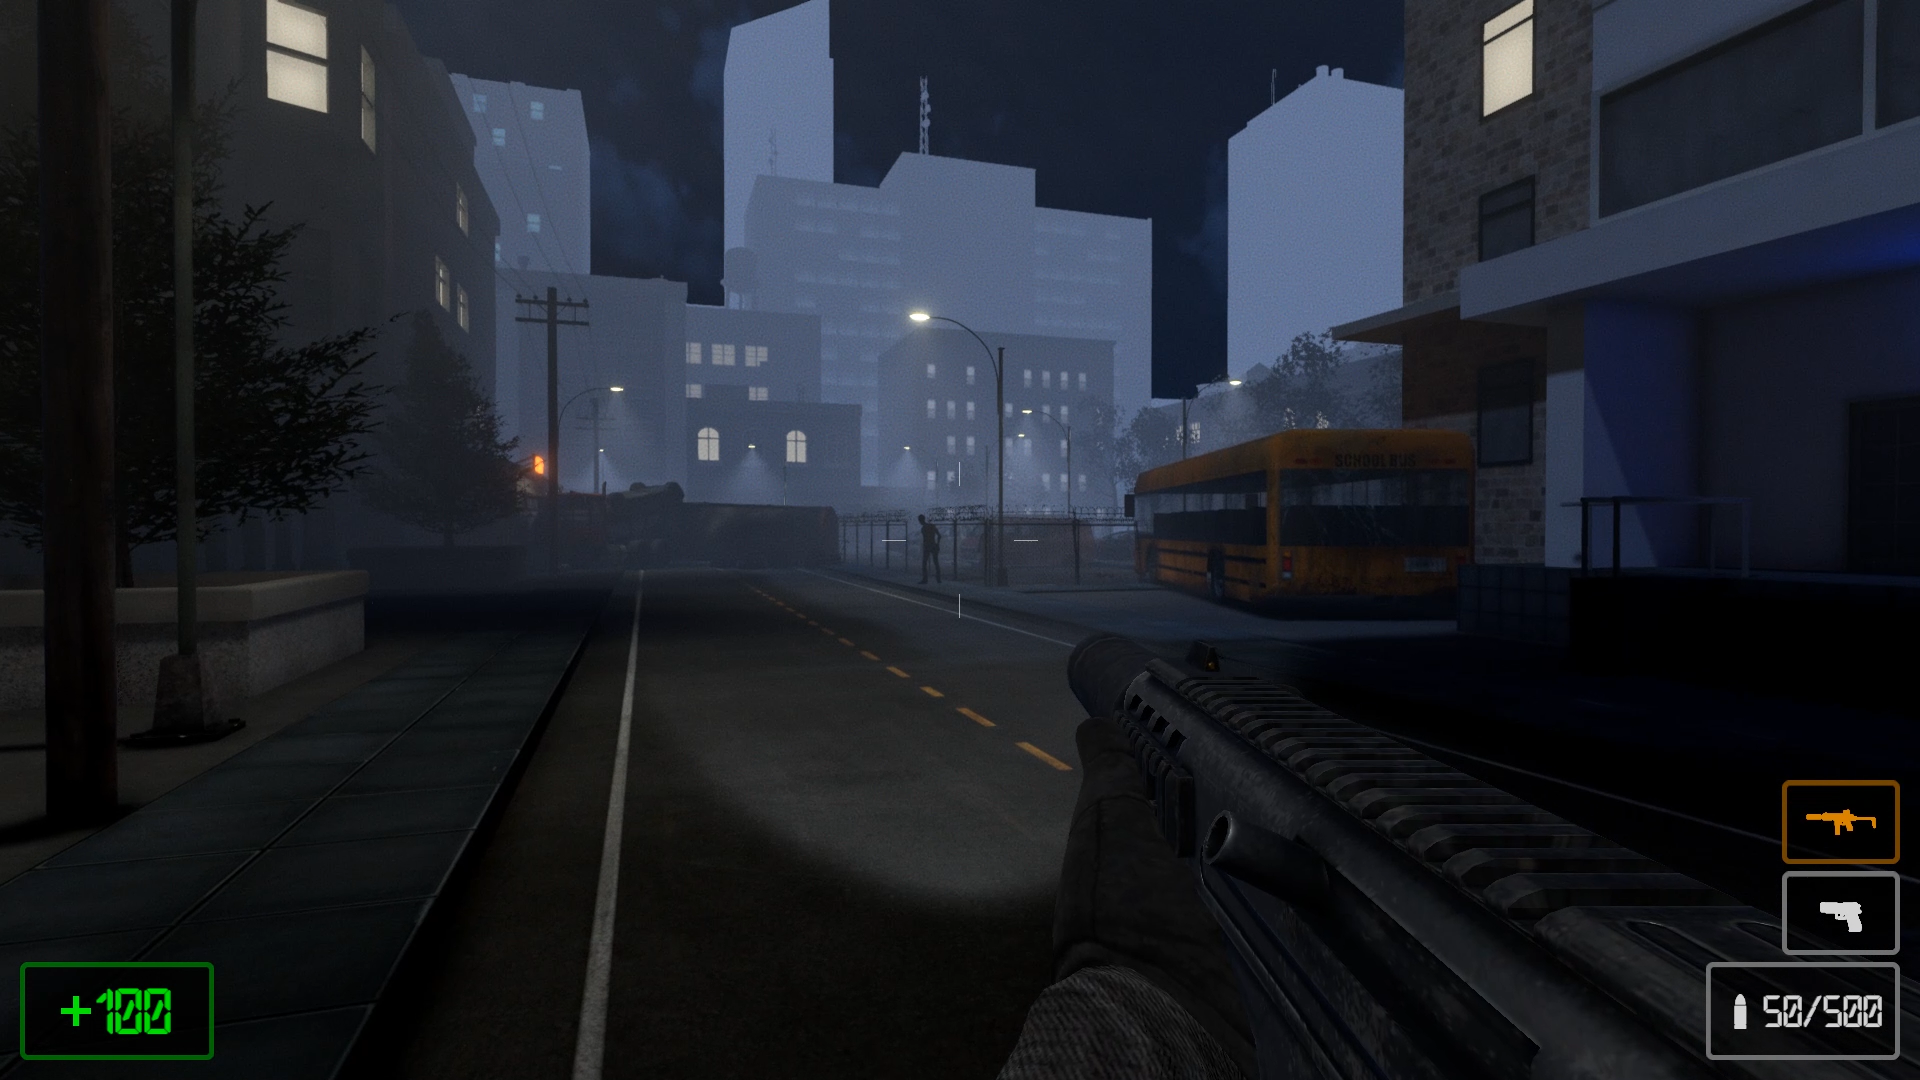 Screenshot 1 of Erfindung 3 - Zombie-Überleben 1.13